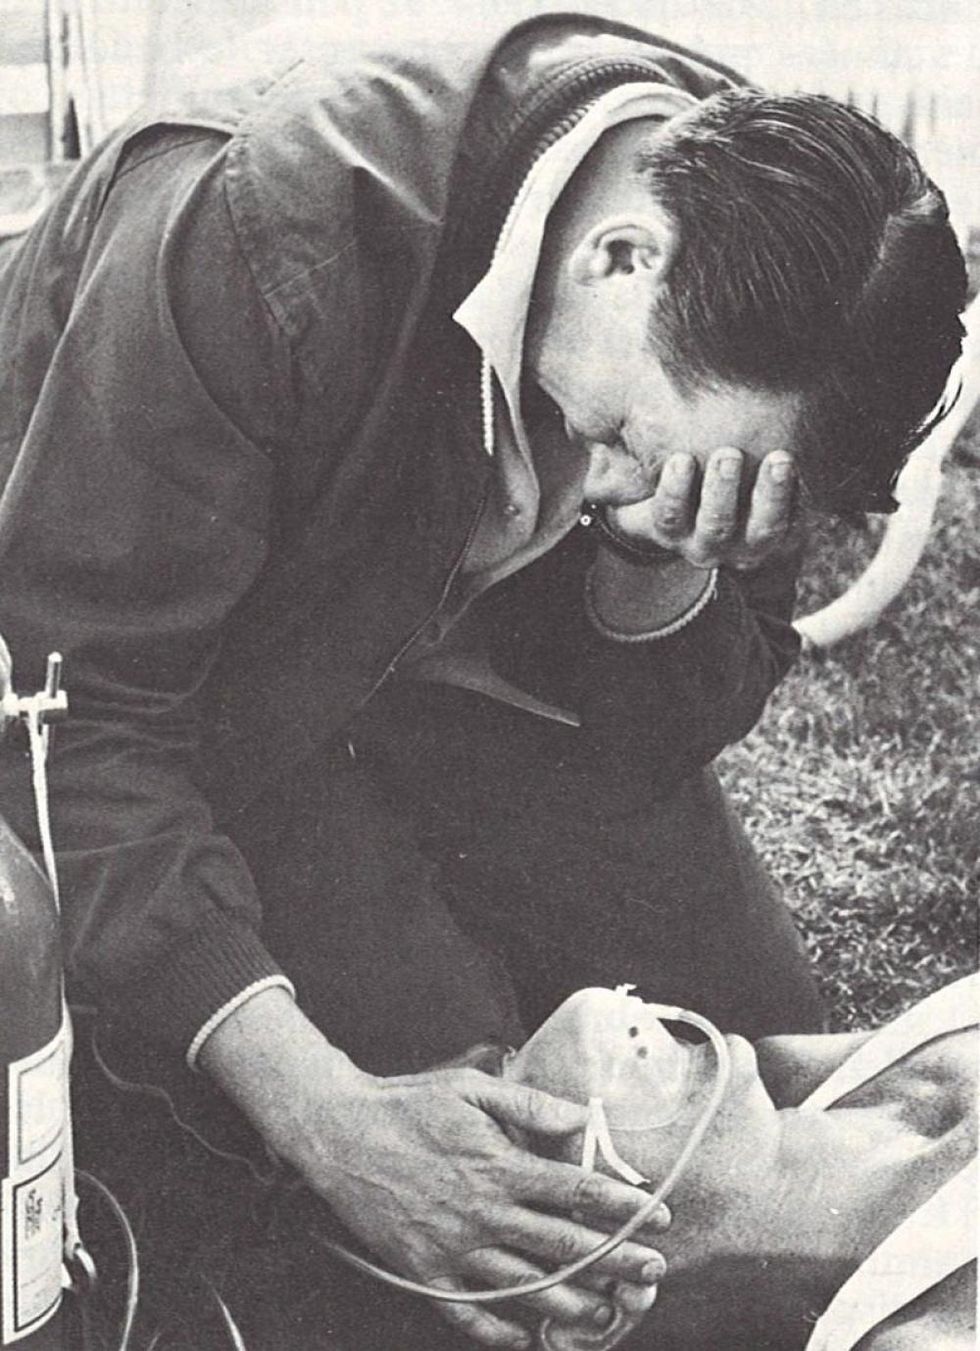 Ron svenuto sul prato dopo i 10.000 di Mexico City 1968, viene rianimato con l’ossigeno